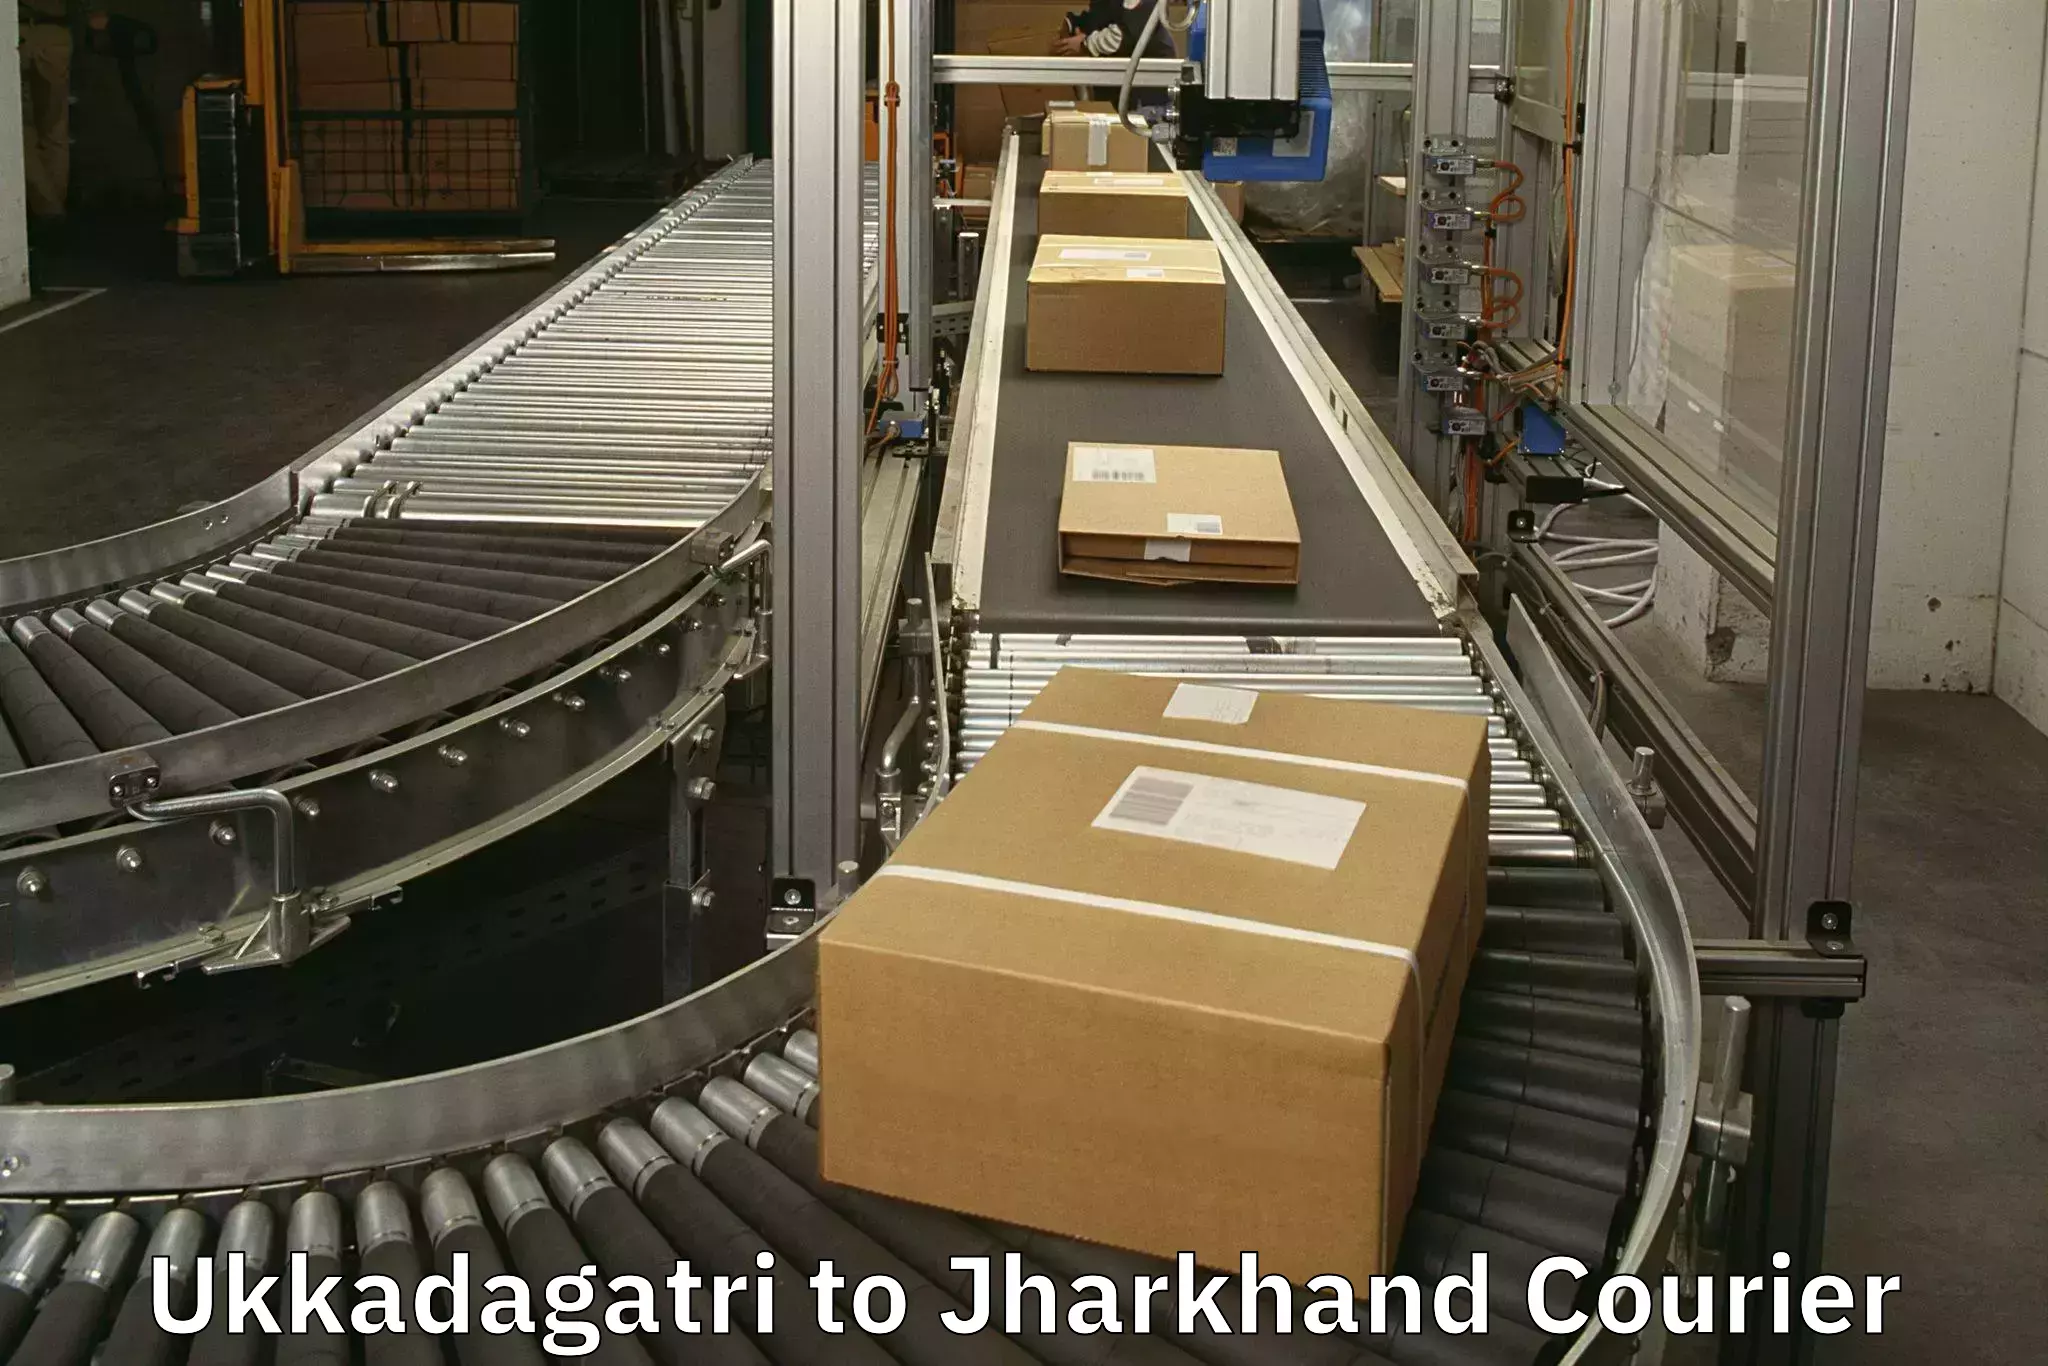 Nationwide luggage courier Ukkadagatri to Ranchi